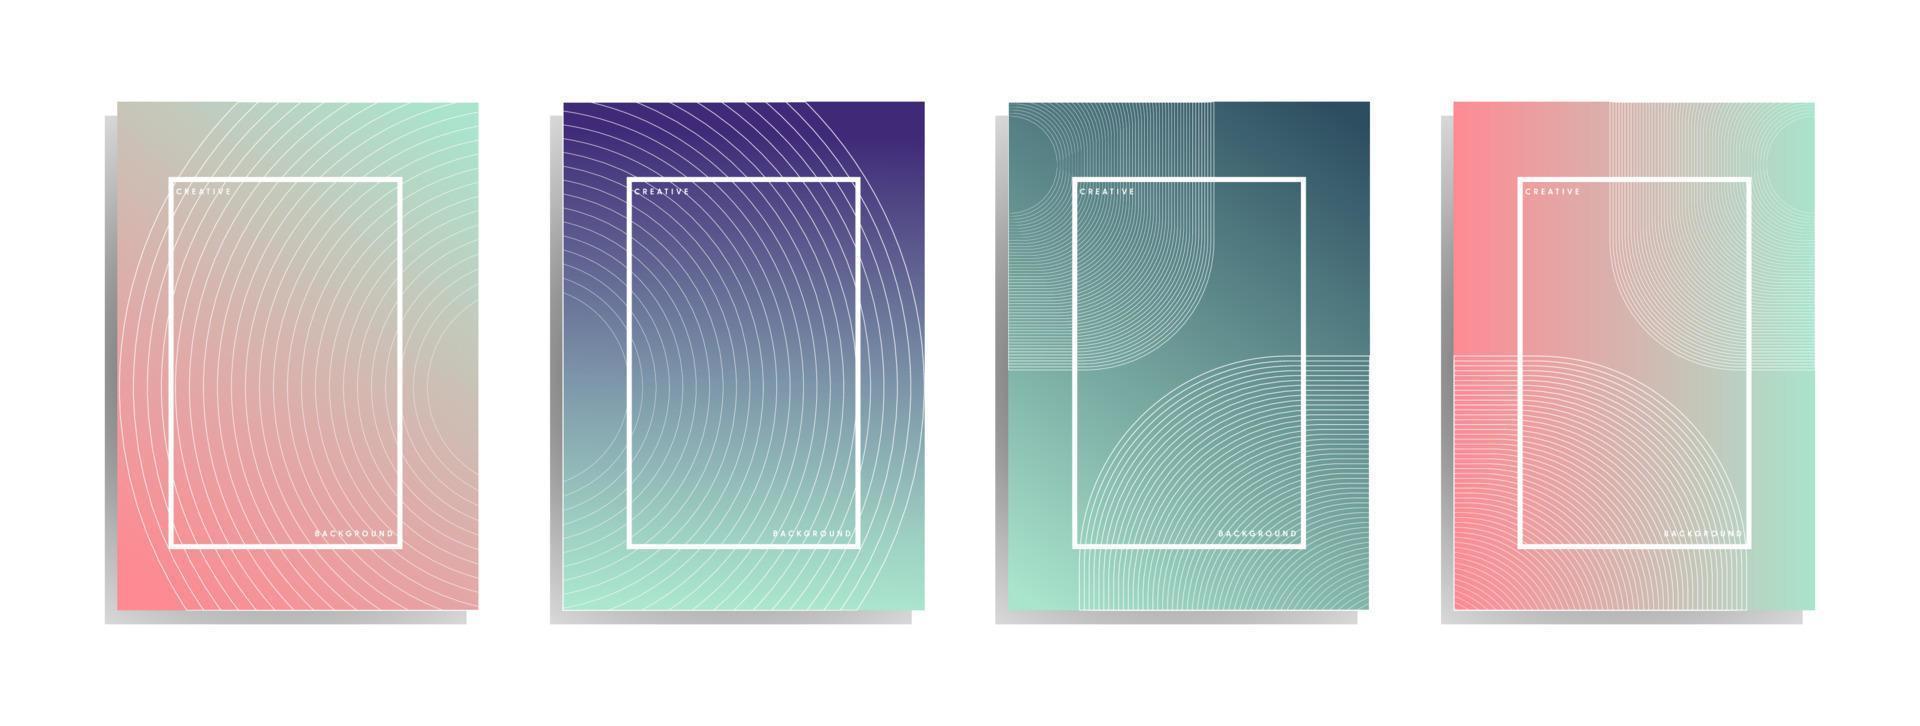 diseño de portada mínimo. degradado de semitonos de colores. patrón geométrico futuro. vector